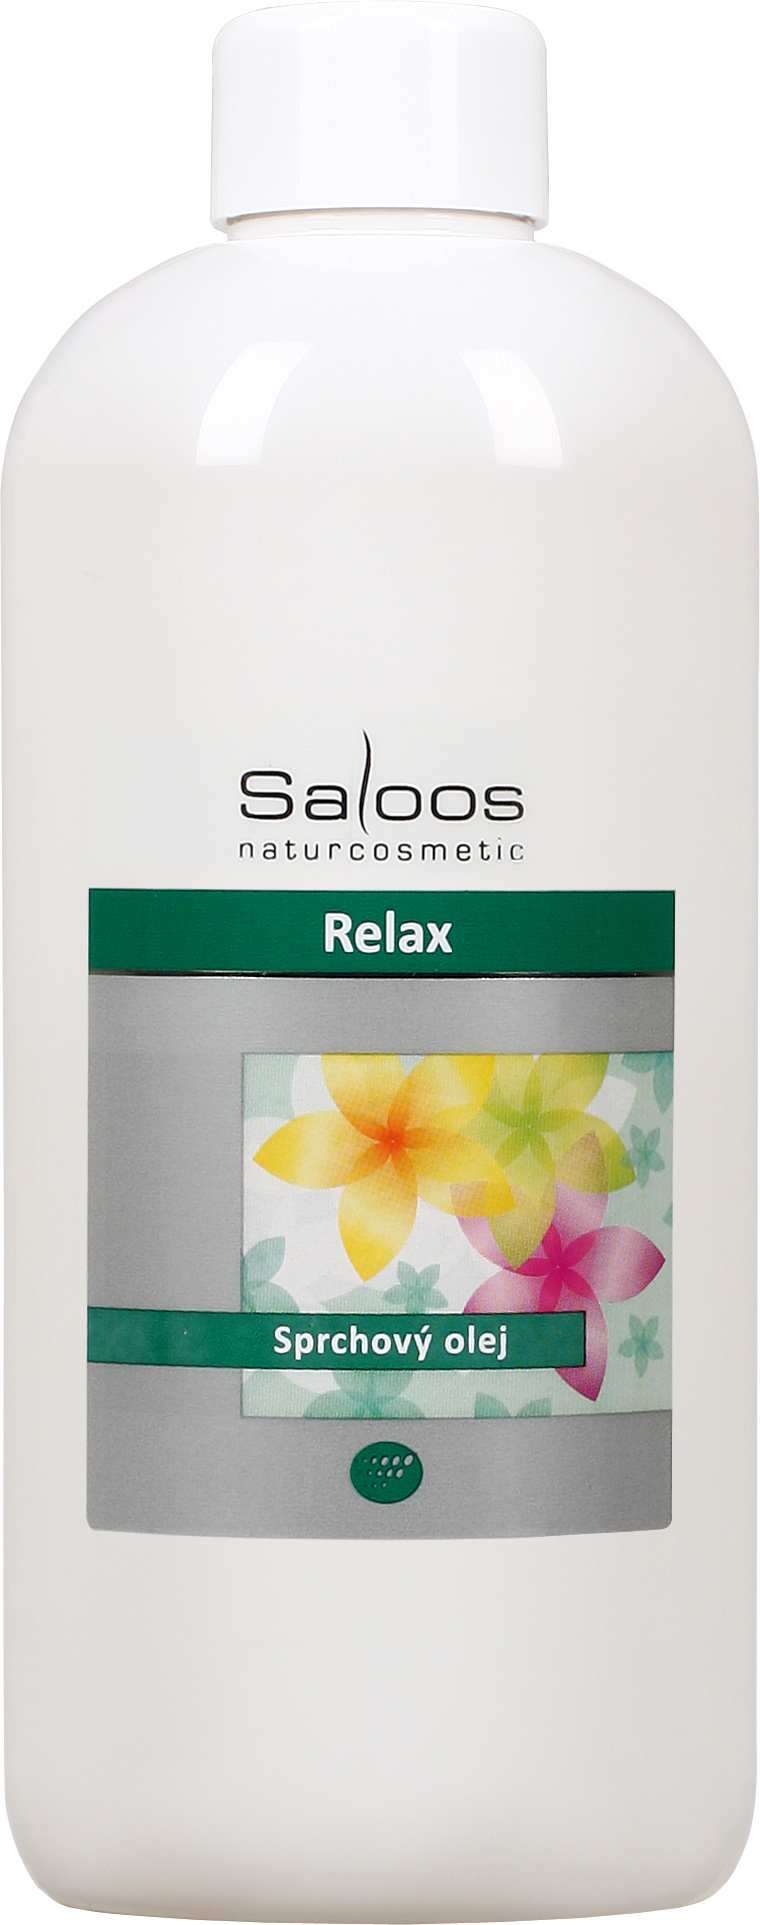 Saloos Relax - sprchový olej Balení: 500 ml